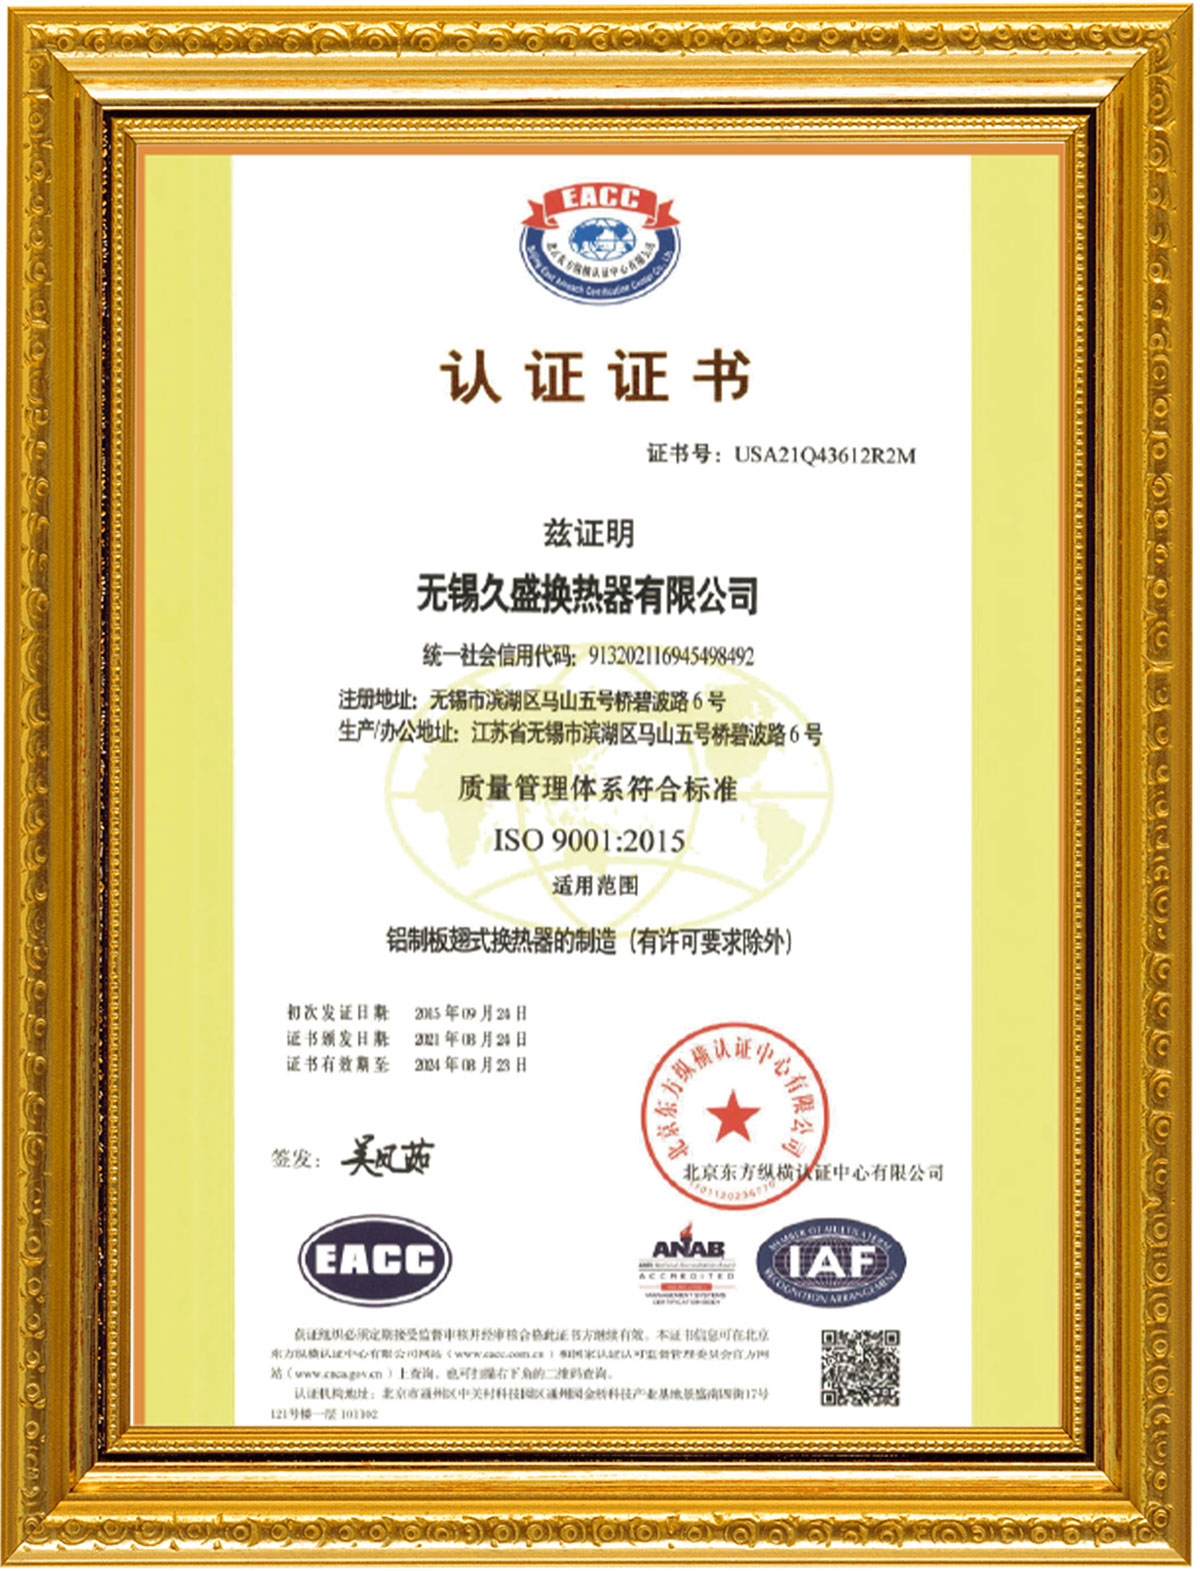 sertifikat10taj